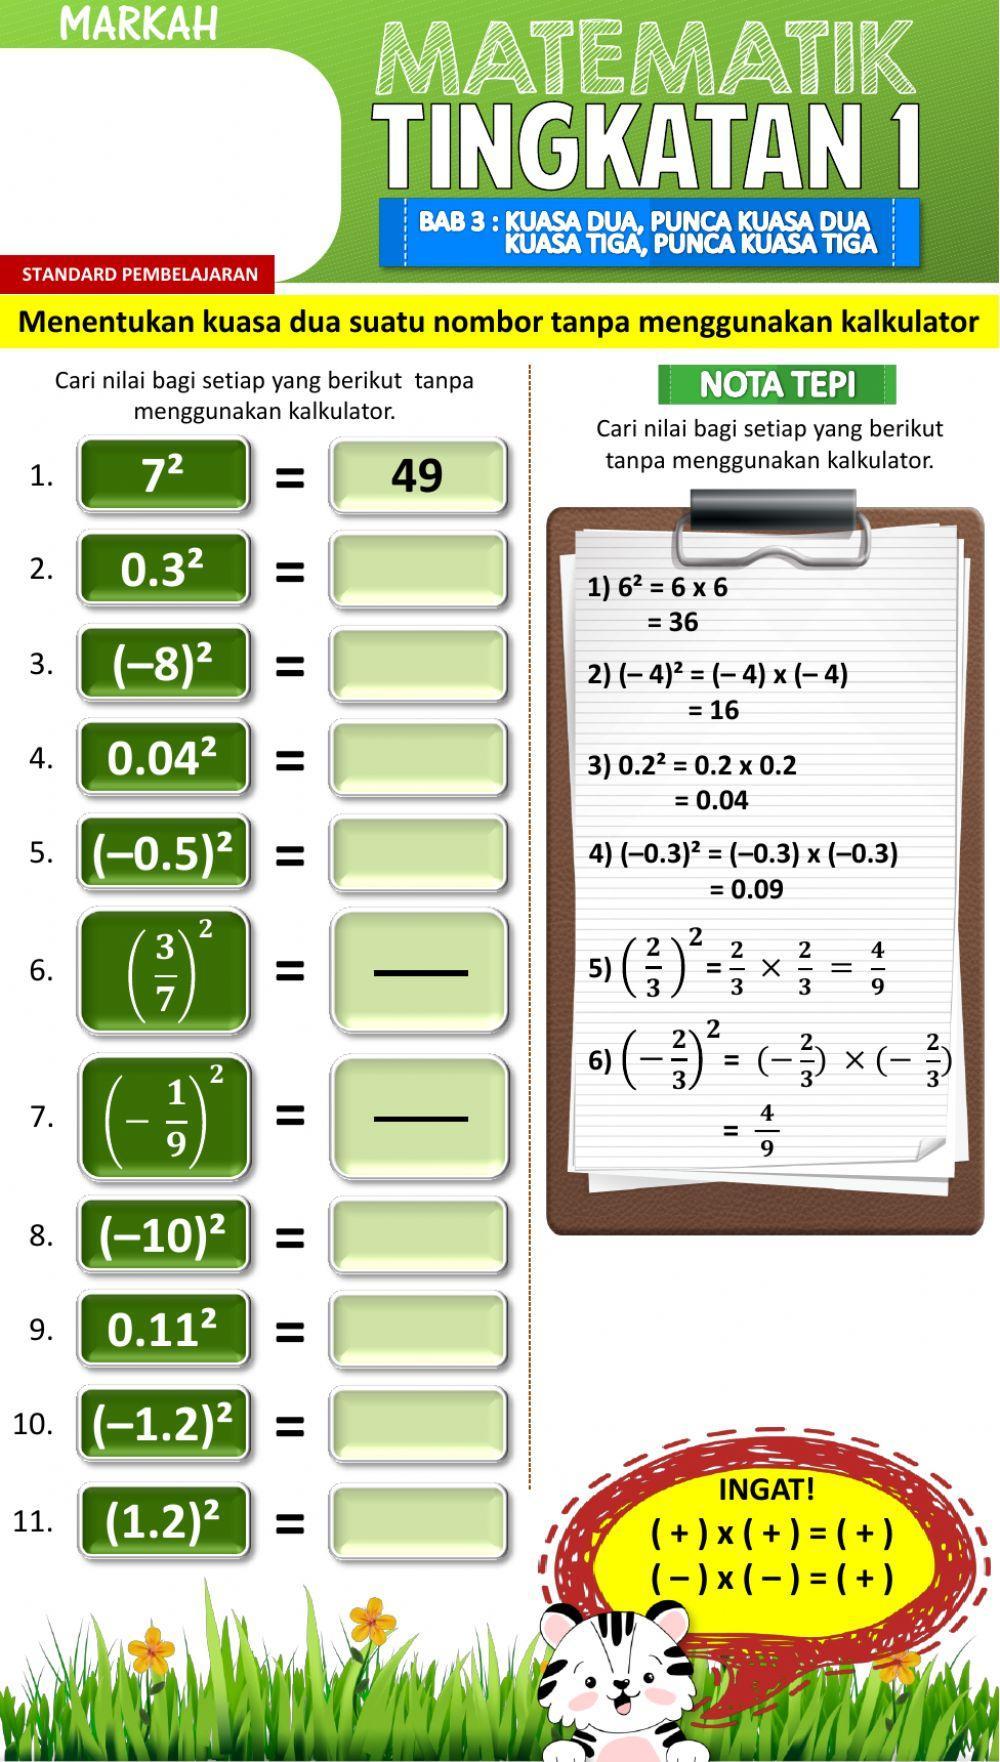 Menentukan kuasa dua suatu nombor tanpa menggunakan kalkulator